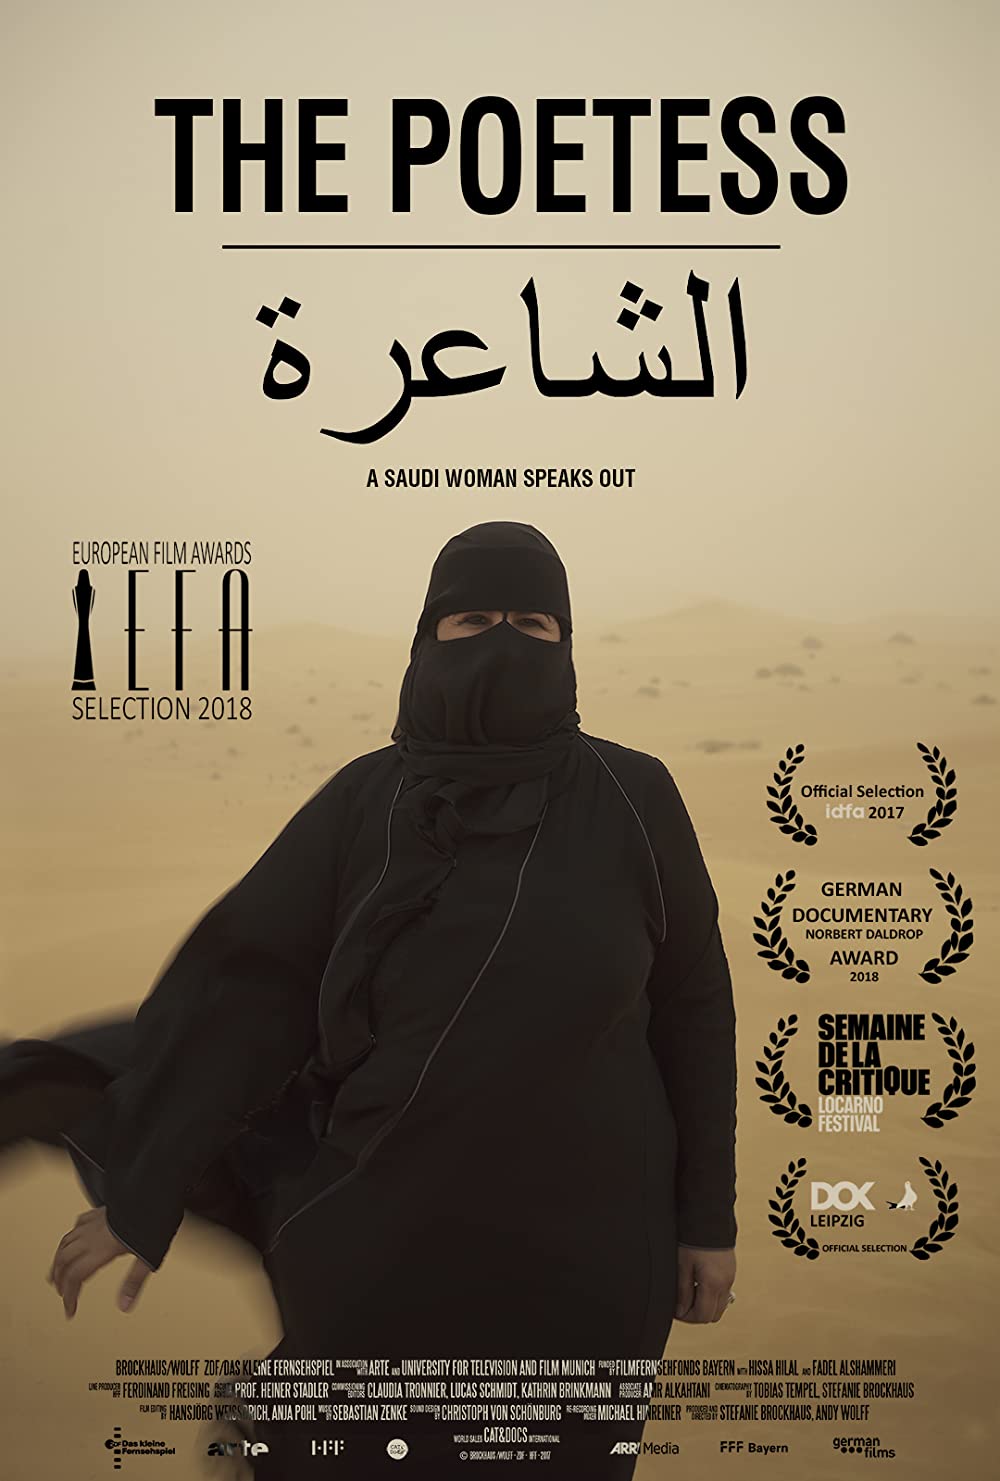 Filmbeschreibung zu Hissa Hilal - Eine Stimme hinter dem Schleier